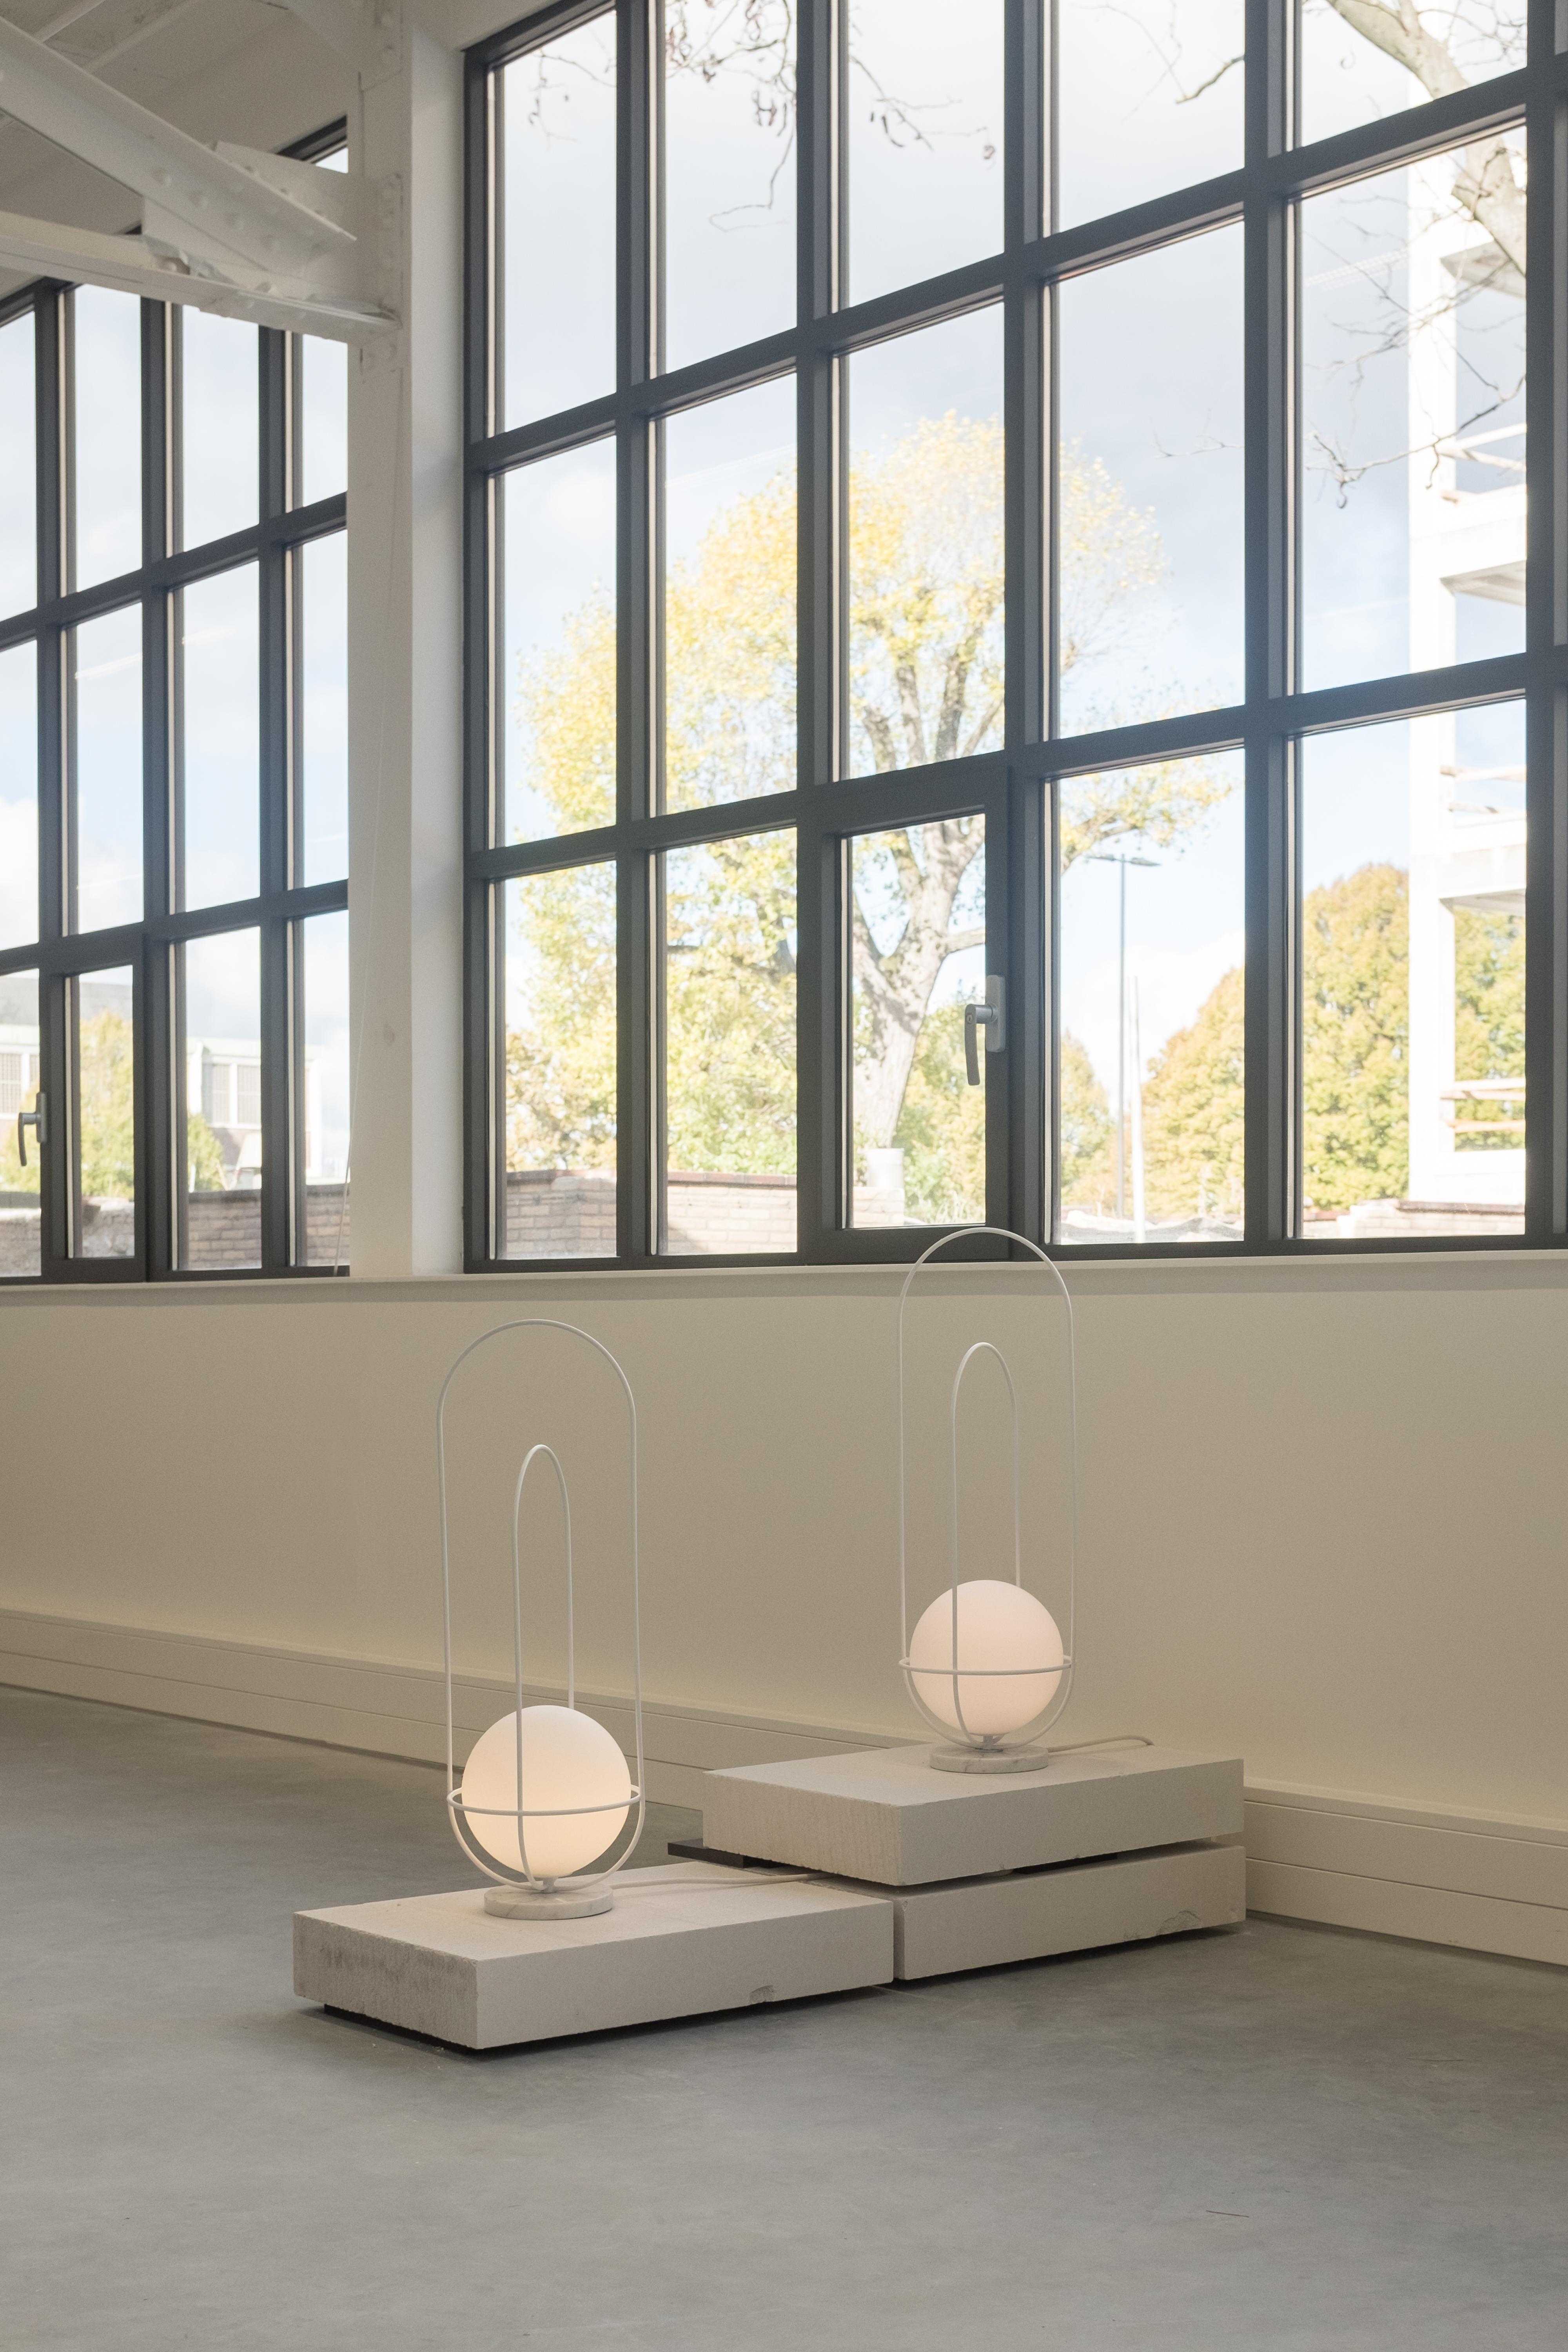 Lampe de table Orbit 2015
Design/One : Lukas Peet, éditeur : AND Light

MATERIALS
- Fil d'acier
- Globe en verre gravé
- Marbre

Dimensions
70 x 25cm / 27.75 